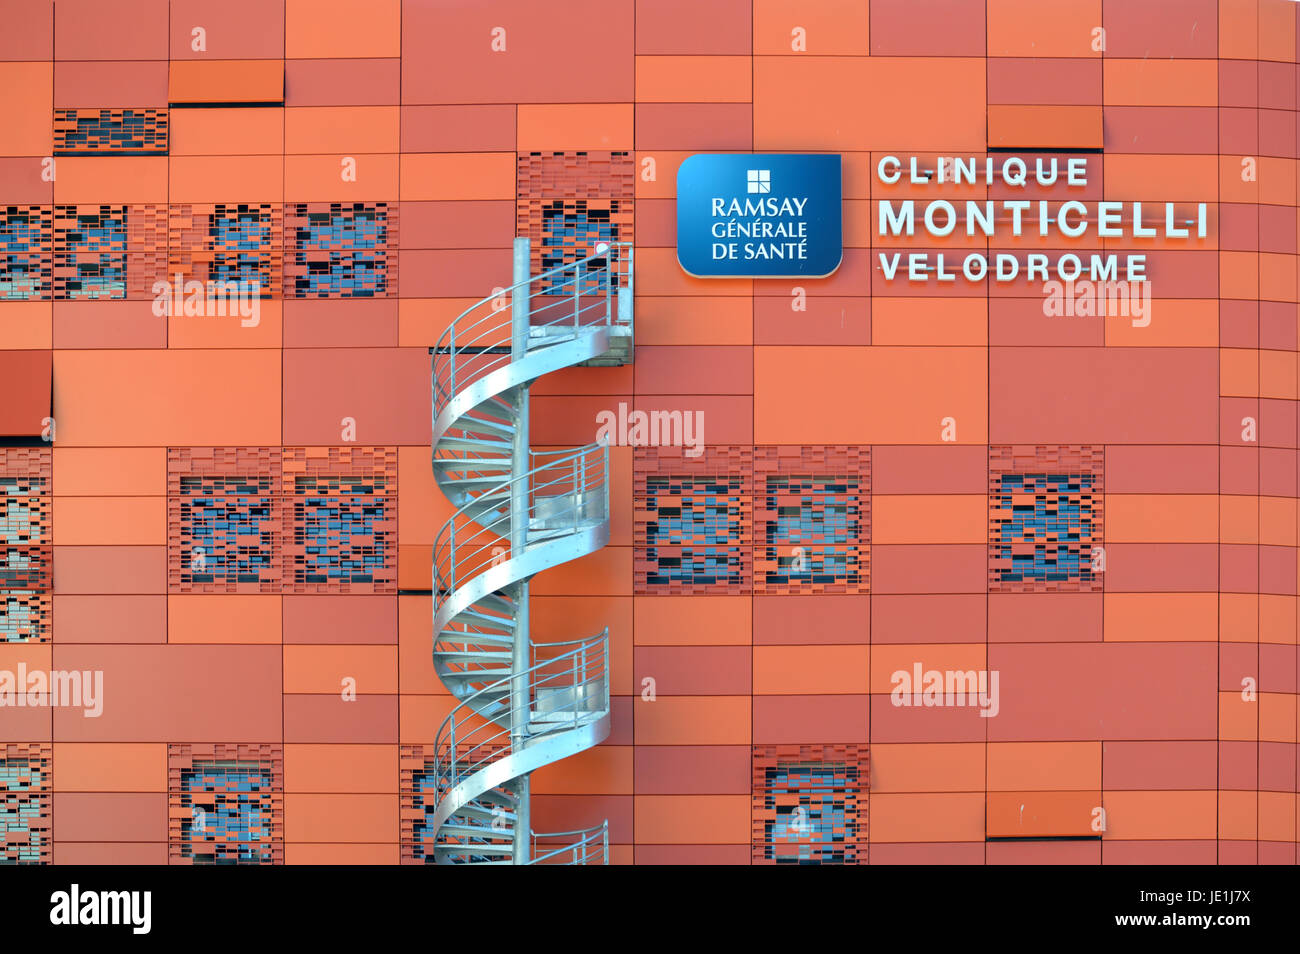 Wendeltreppe aus Aluminium oder Feuerleiter und Orange Metall-Cladding Monticelli Klinik oder Krankenhaus Marseille Frankreich Stockfoto